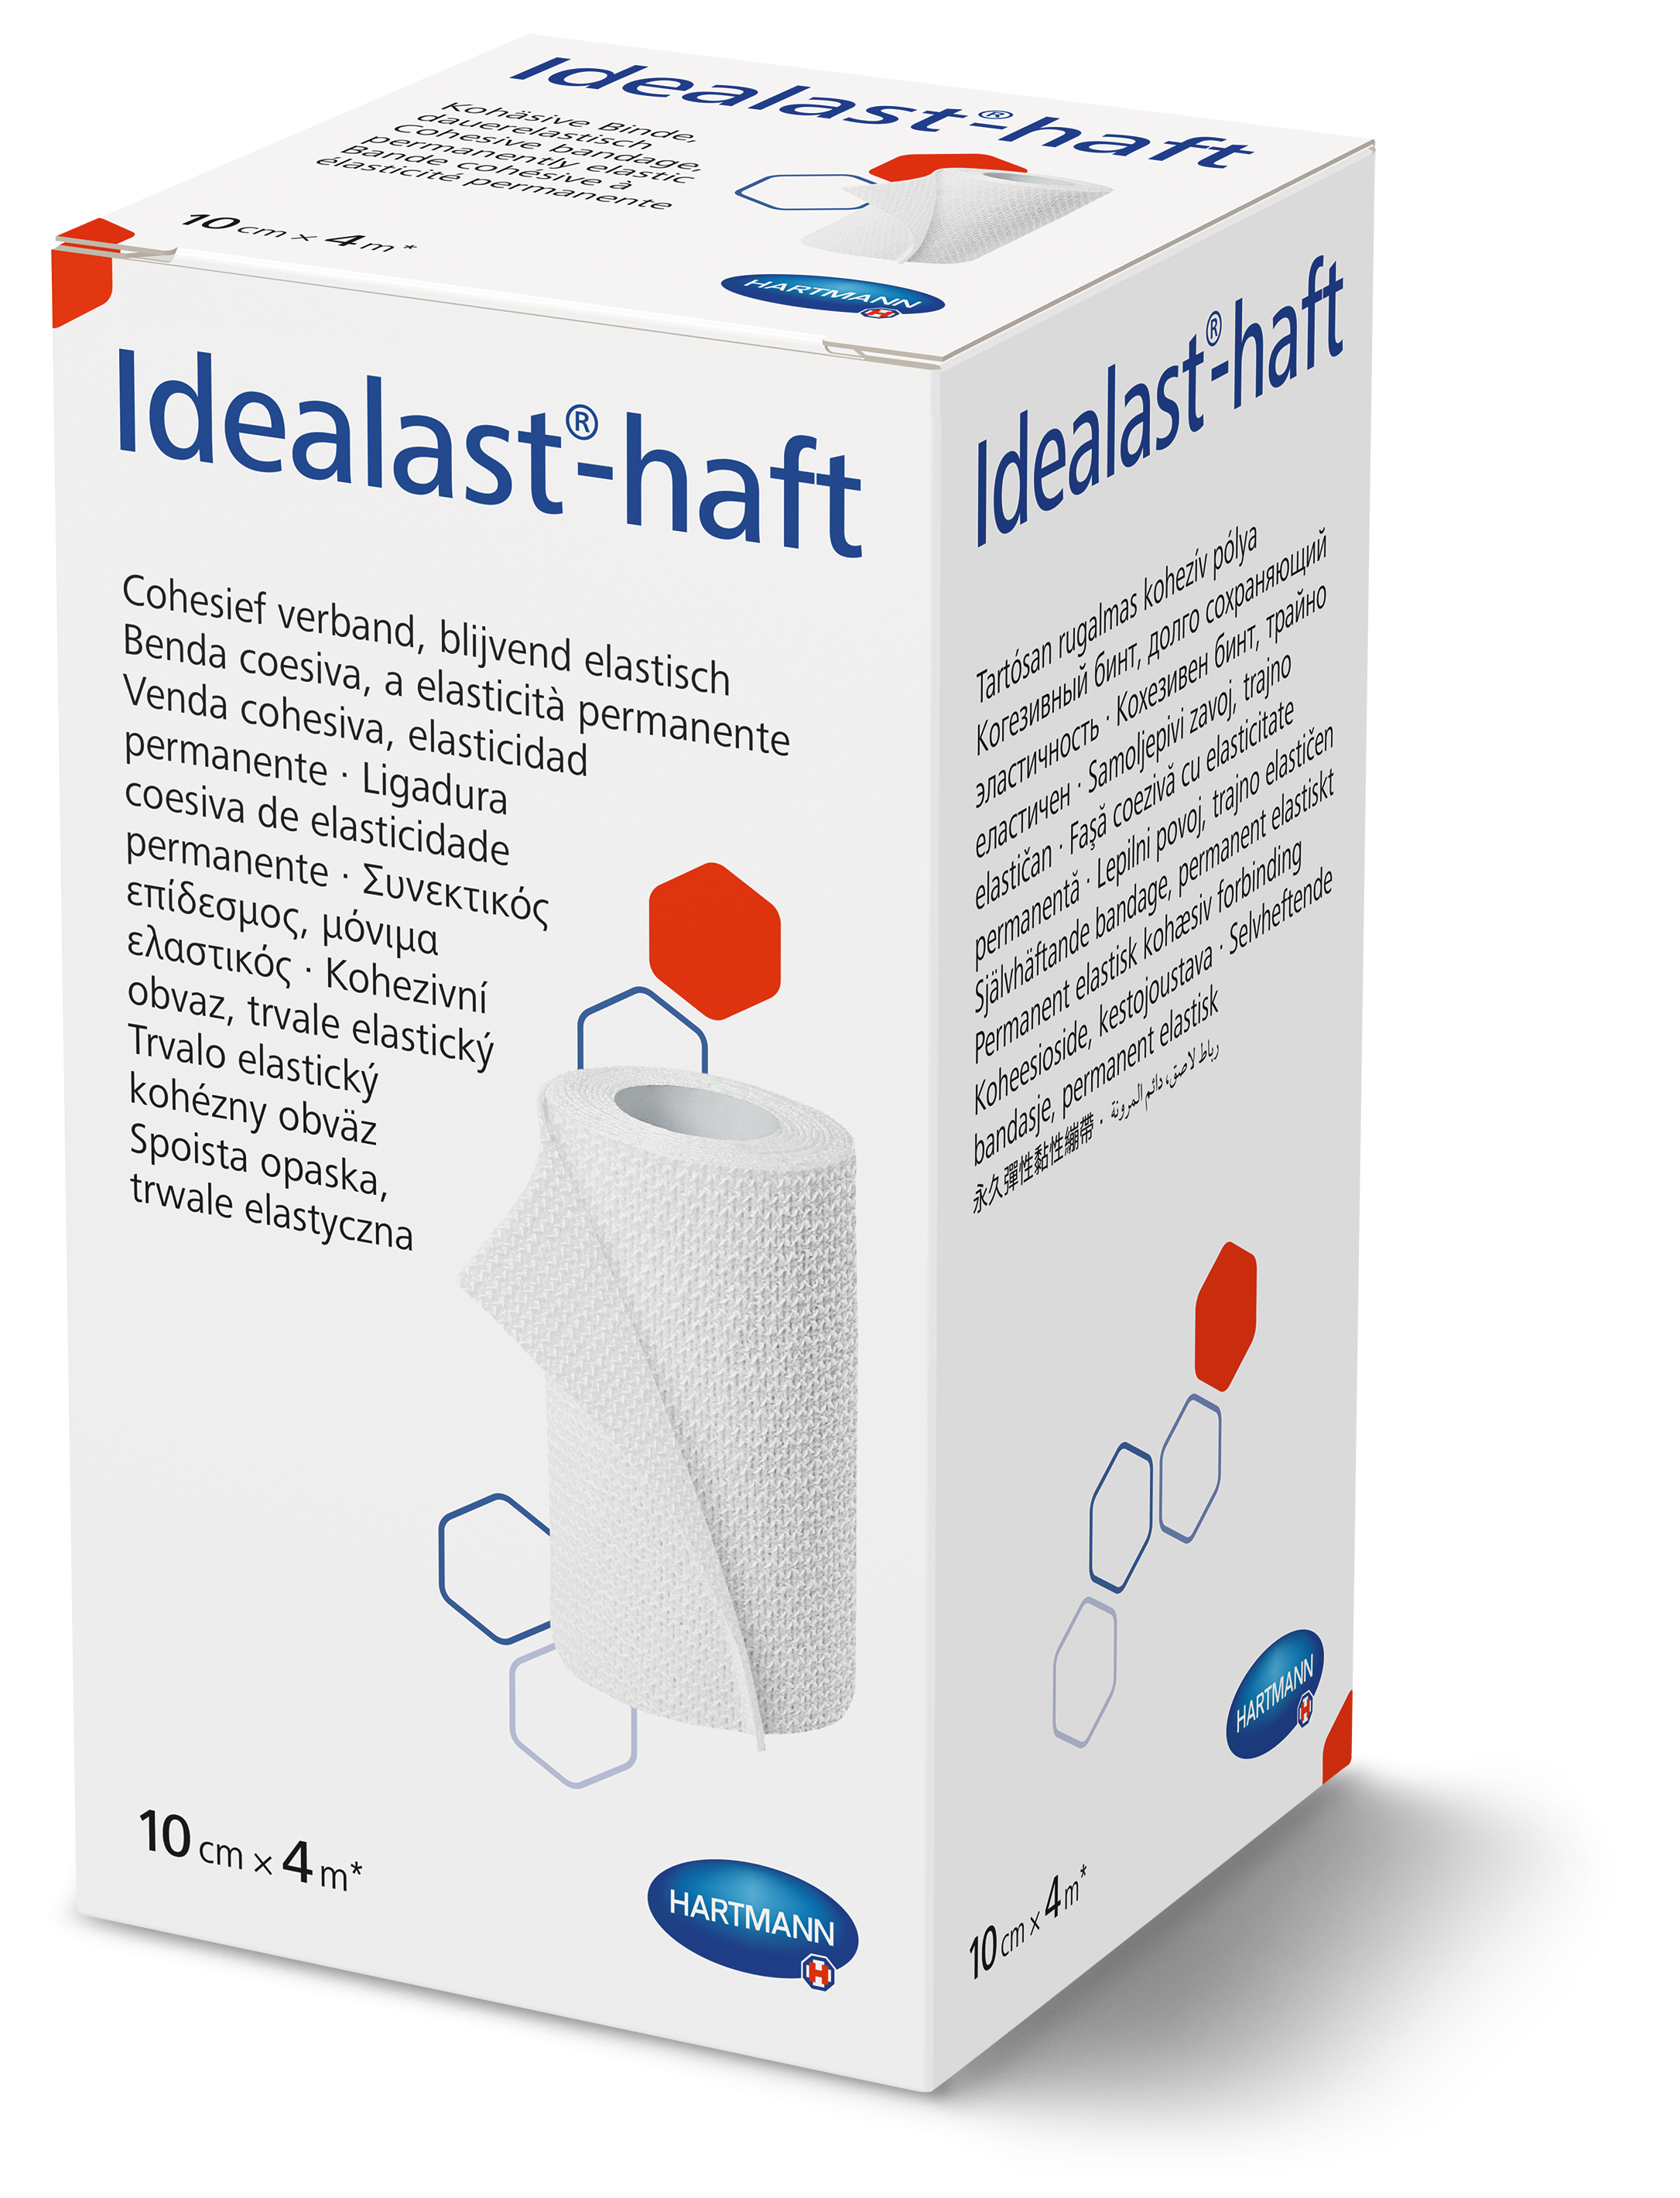 Idealast-haft latex free produkt Hartmann